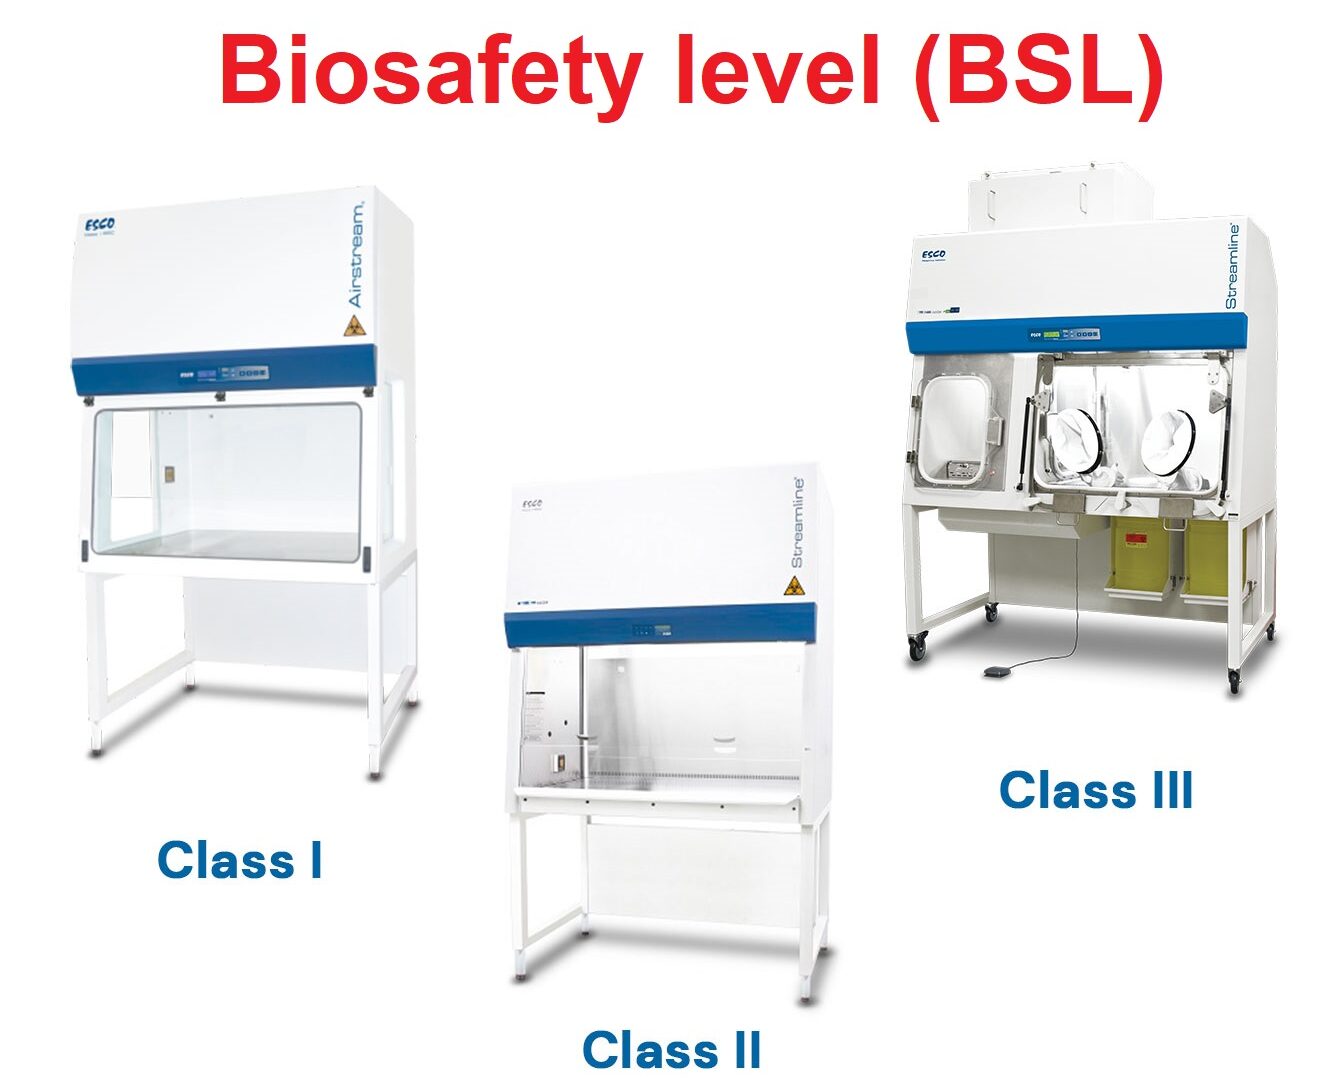 Biosafety level (BSL)